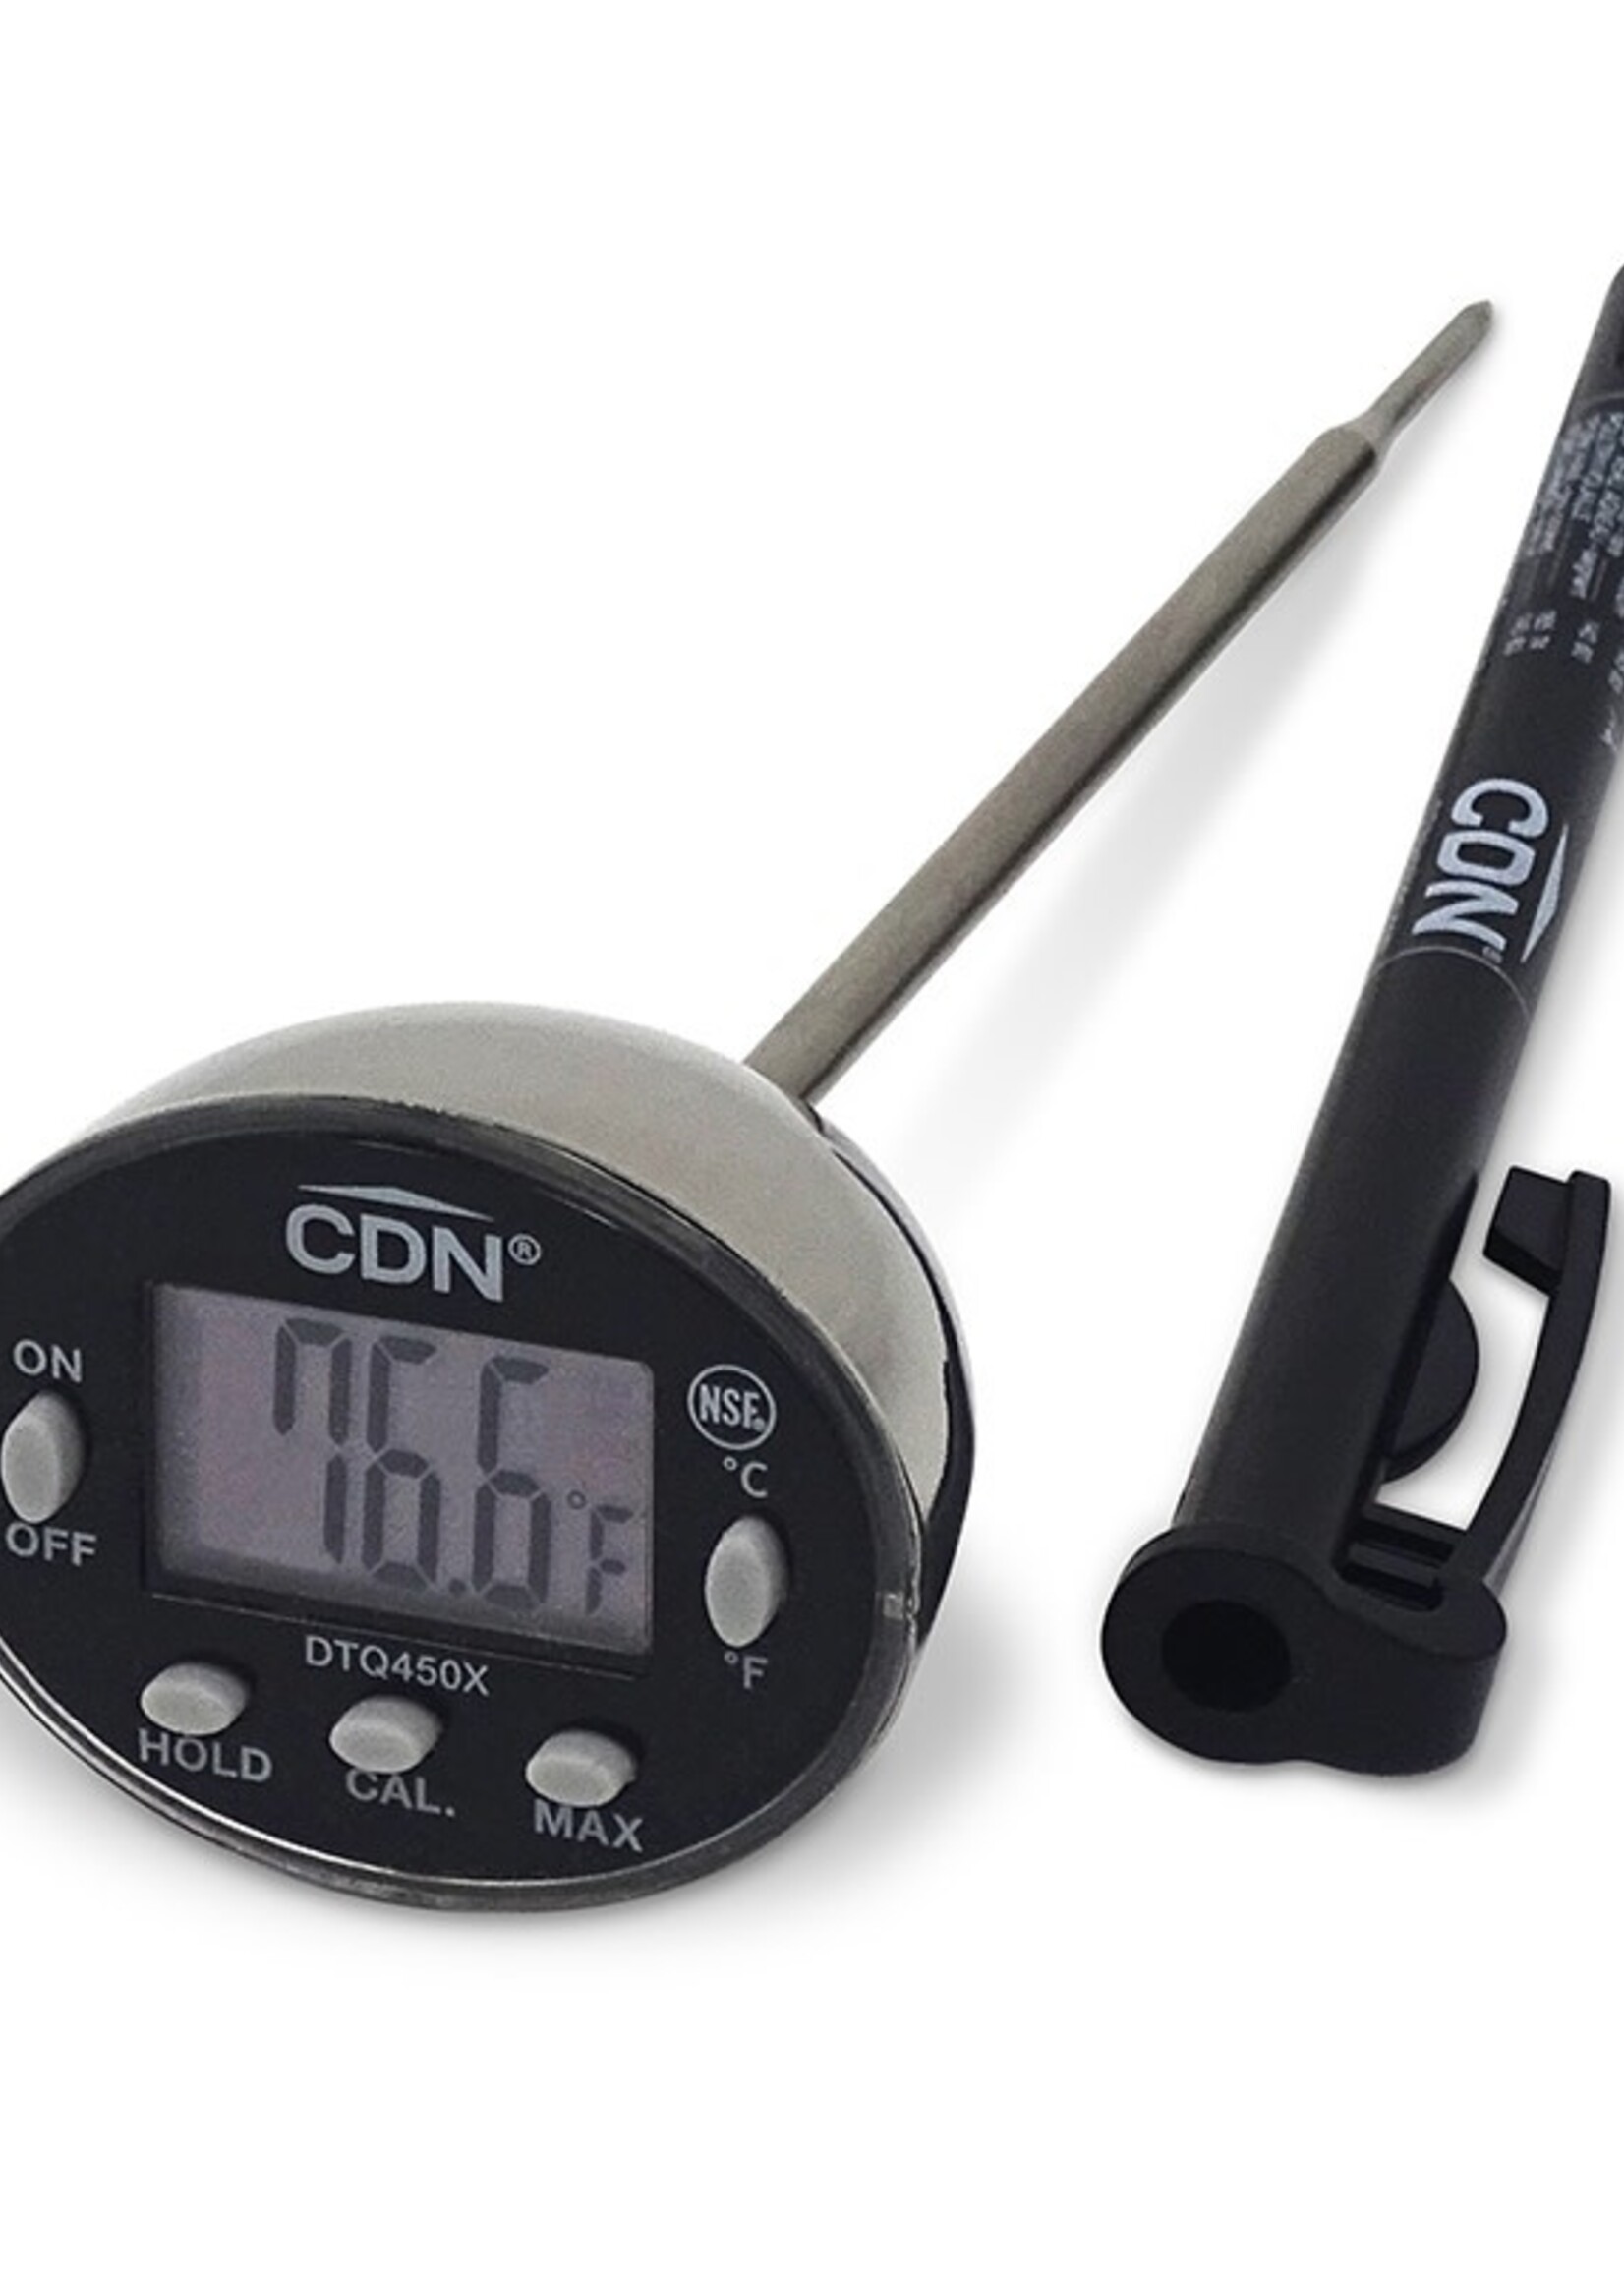 CDN Thin Tip Thermometer DTQ450X